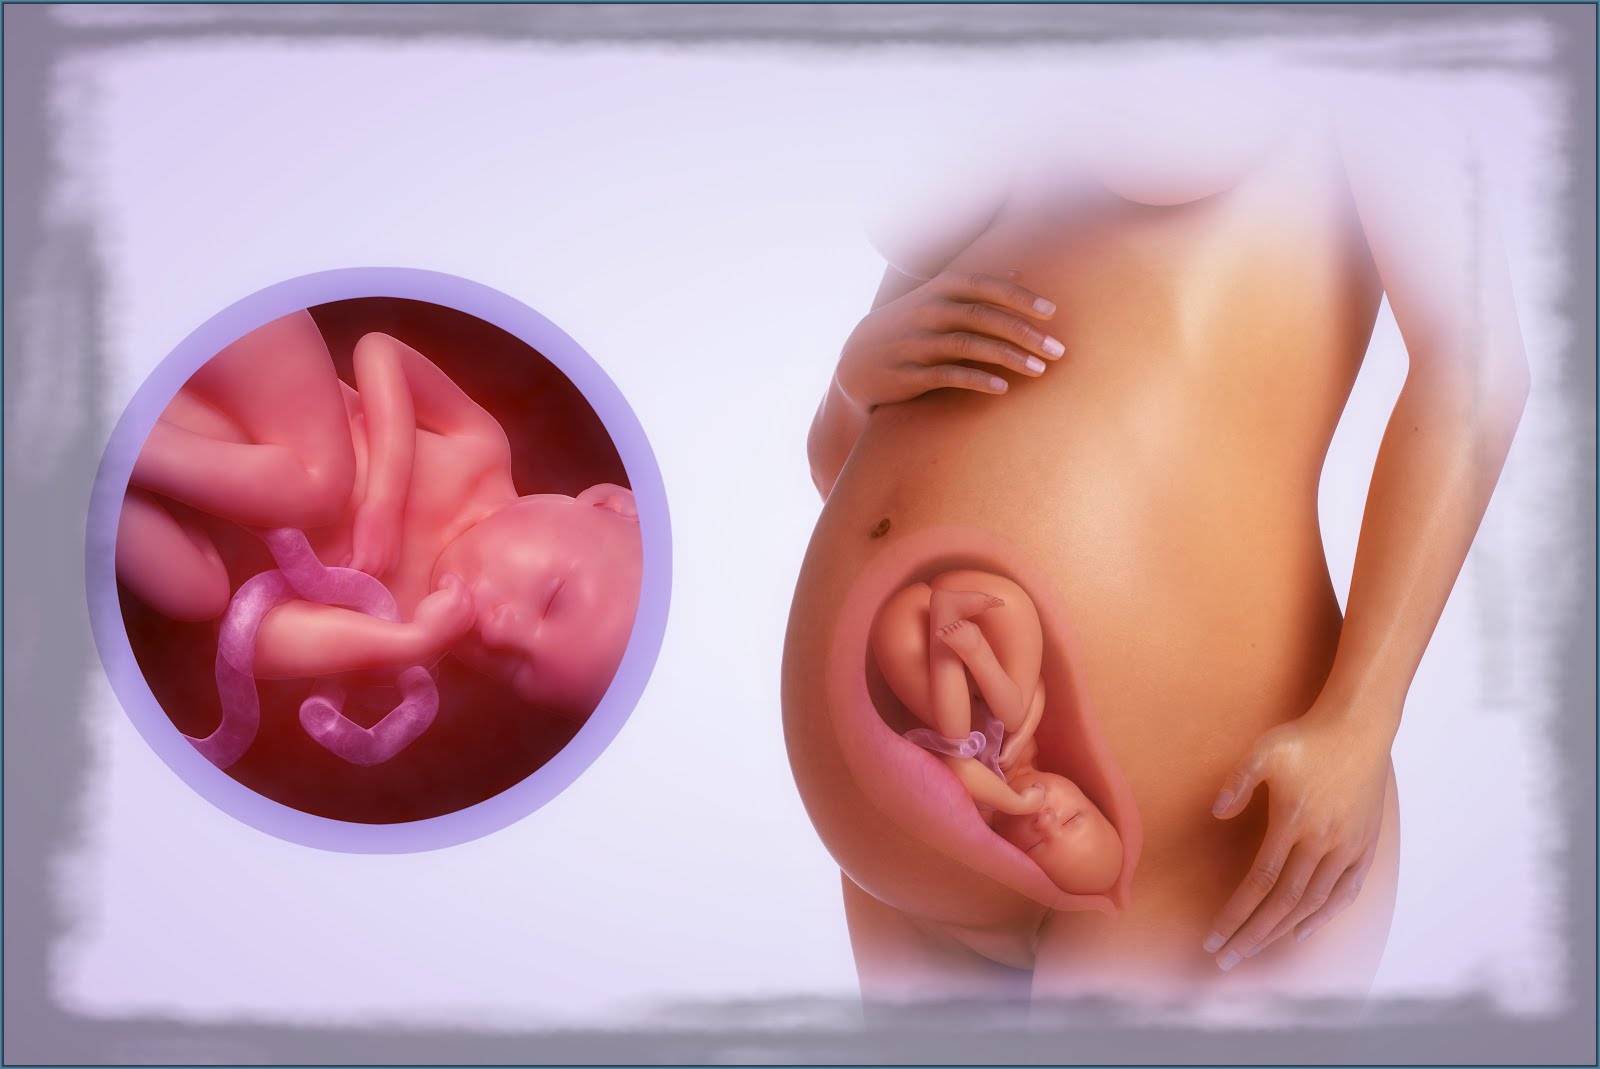 35 неделя беременности: роды, вес и рост ребенка, что происходит, шевеления